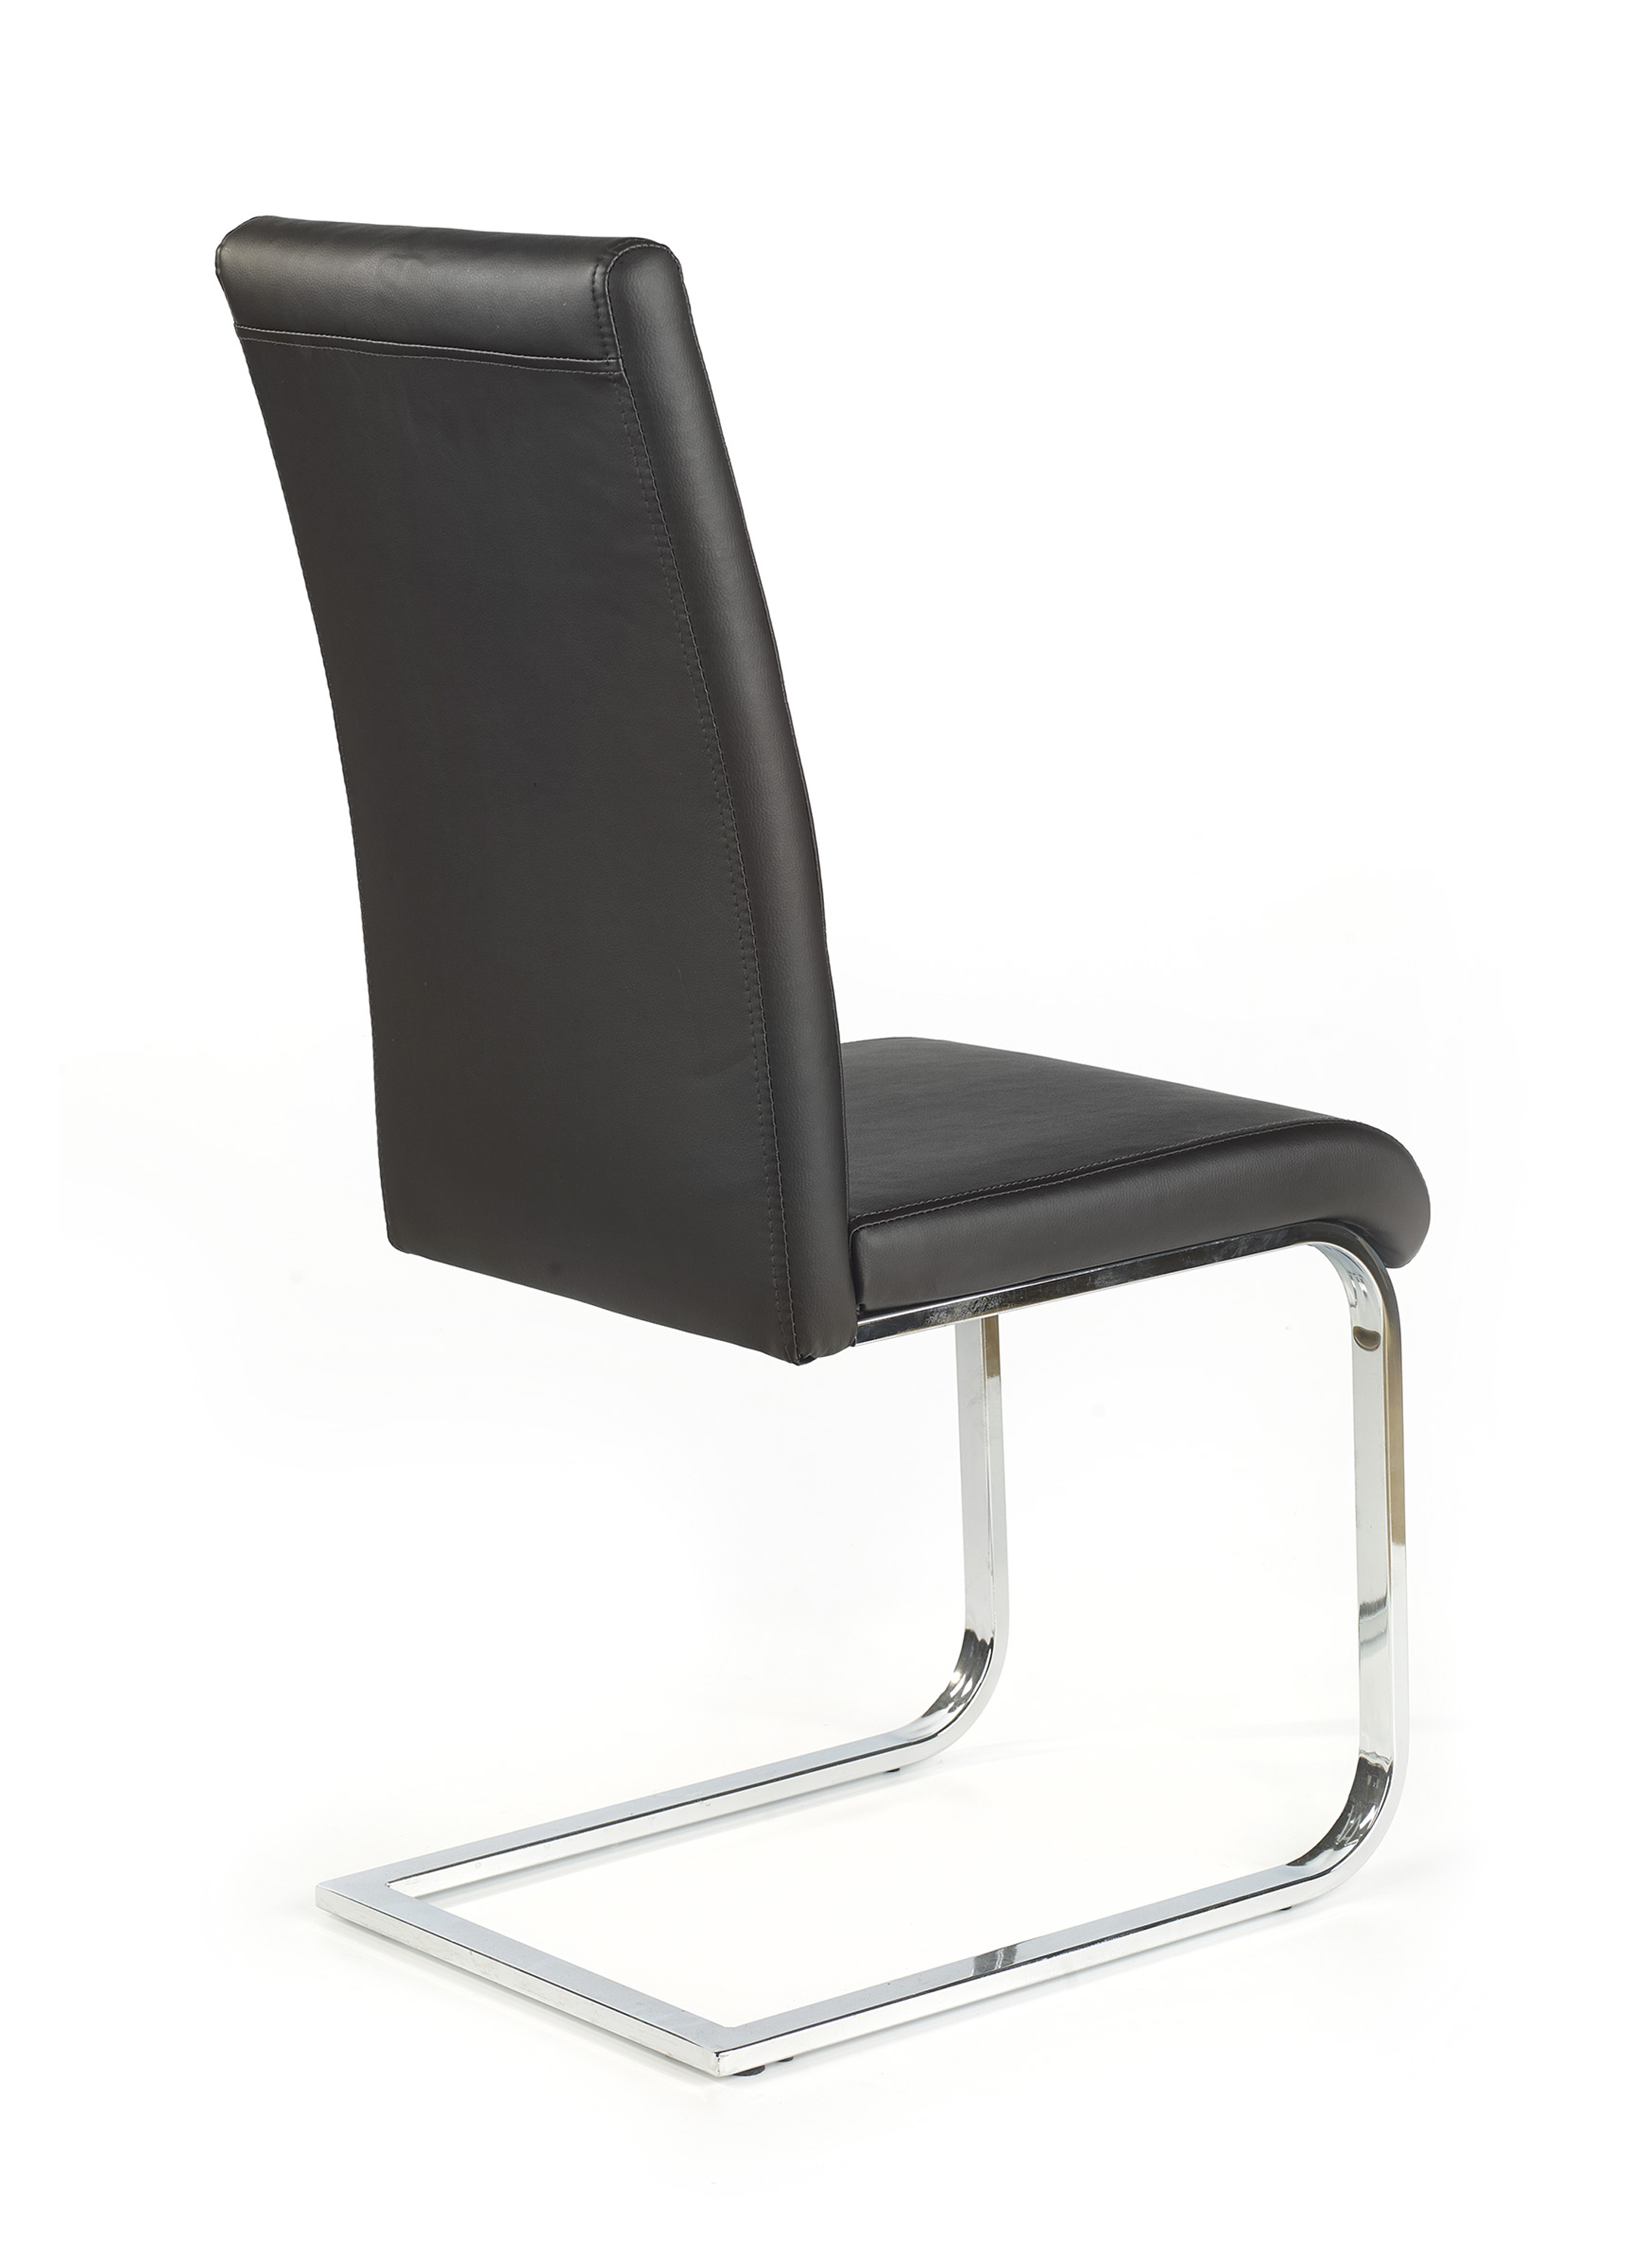 K85 szék - fekete Židle k85 - Fekete